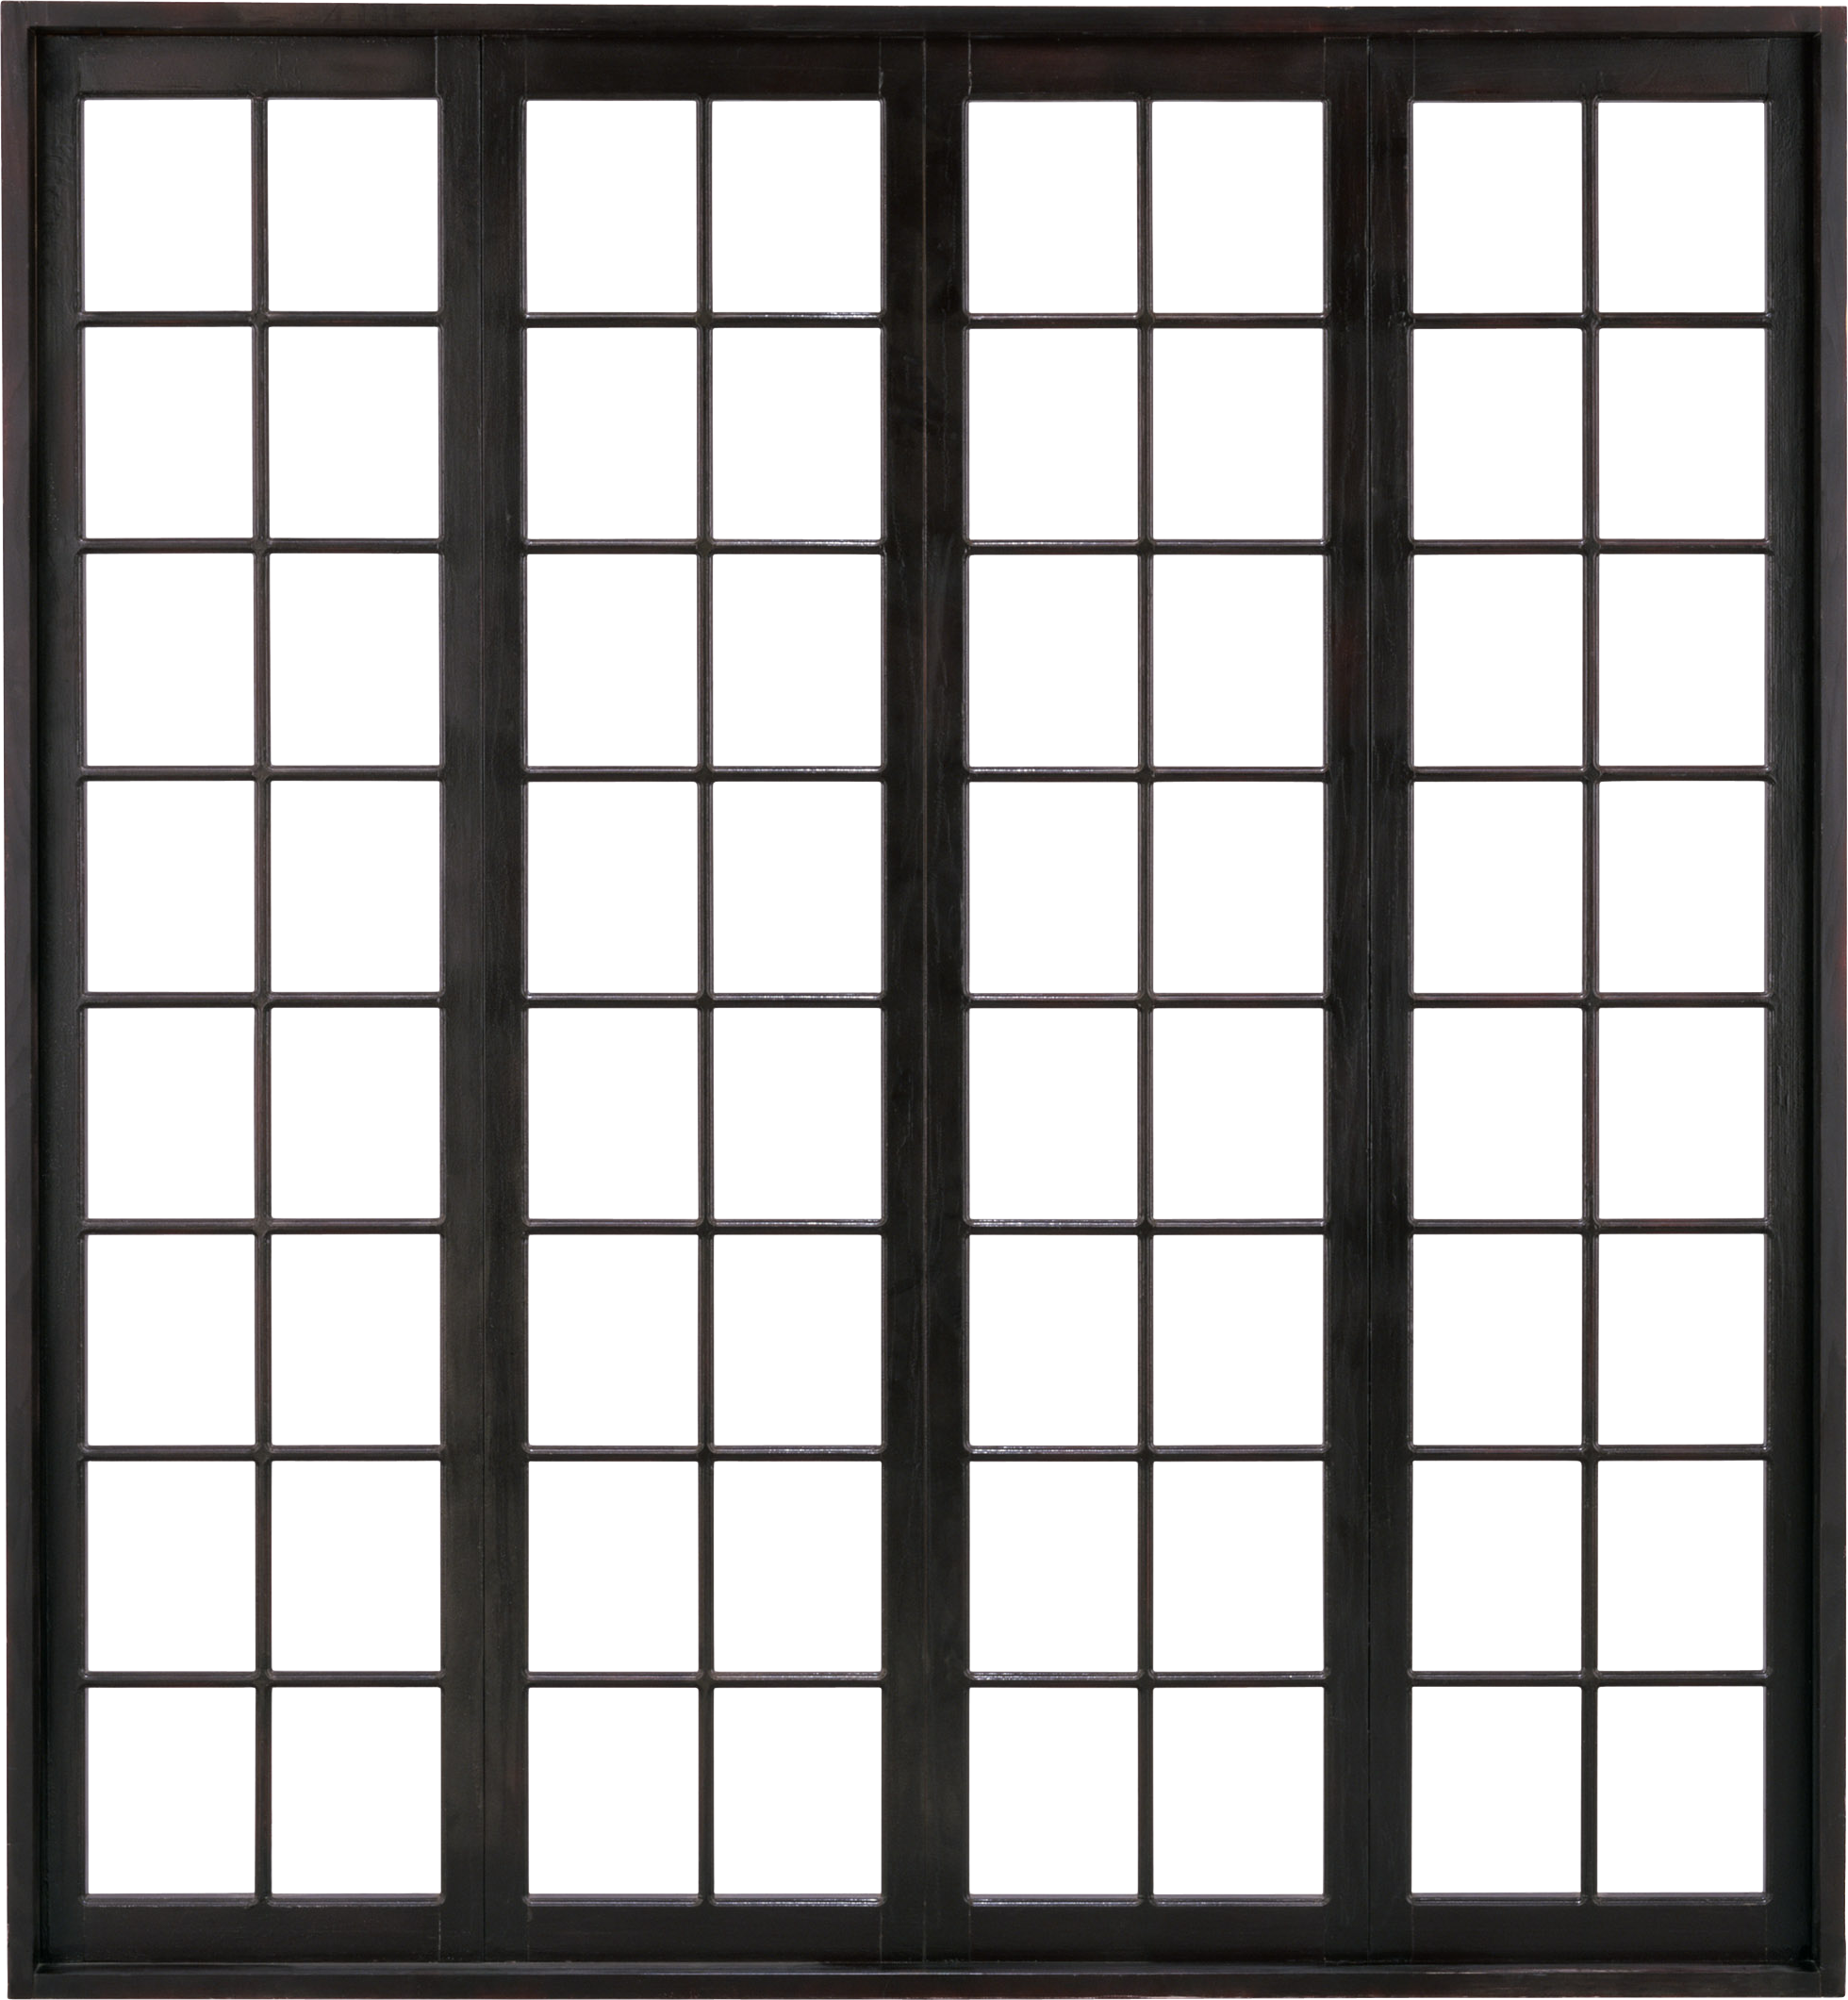 Window elements. Текстура пластикового окна. Окно в черной раме. Окно на прозрачном фоне. Панорамные окна в клетку.